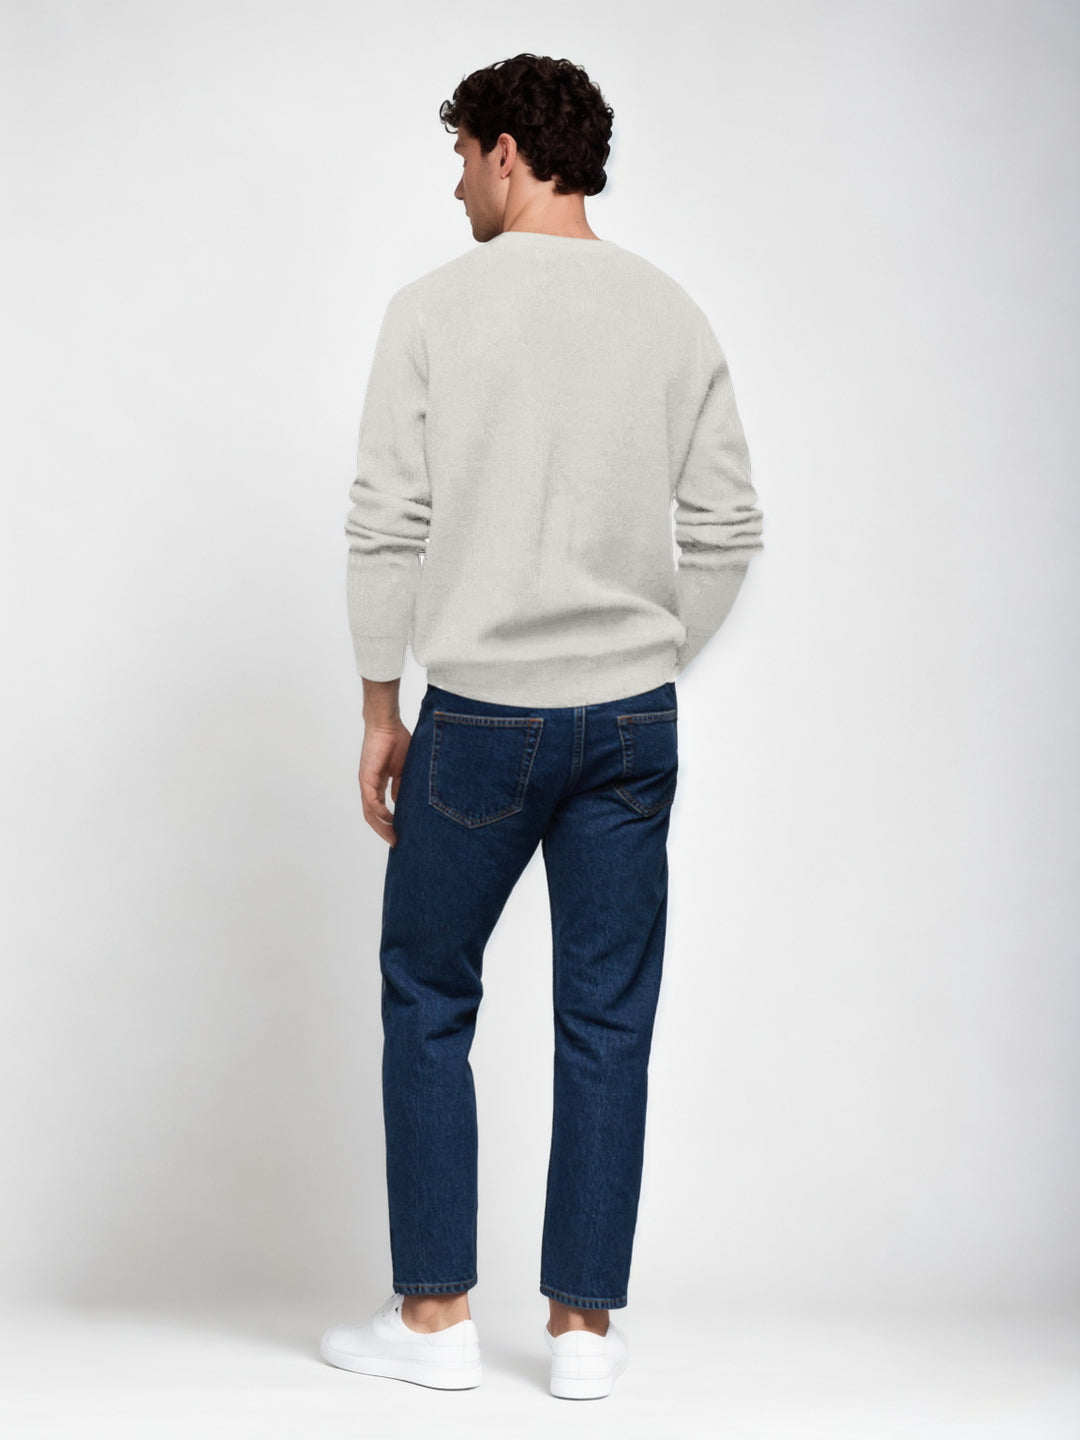 Hemsters Light grey Knitted Full Sleevs Sweatshirt For Men